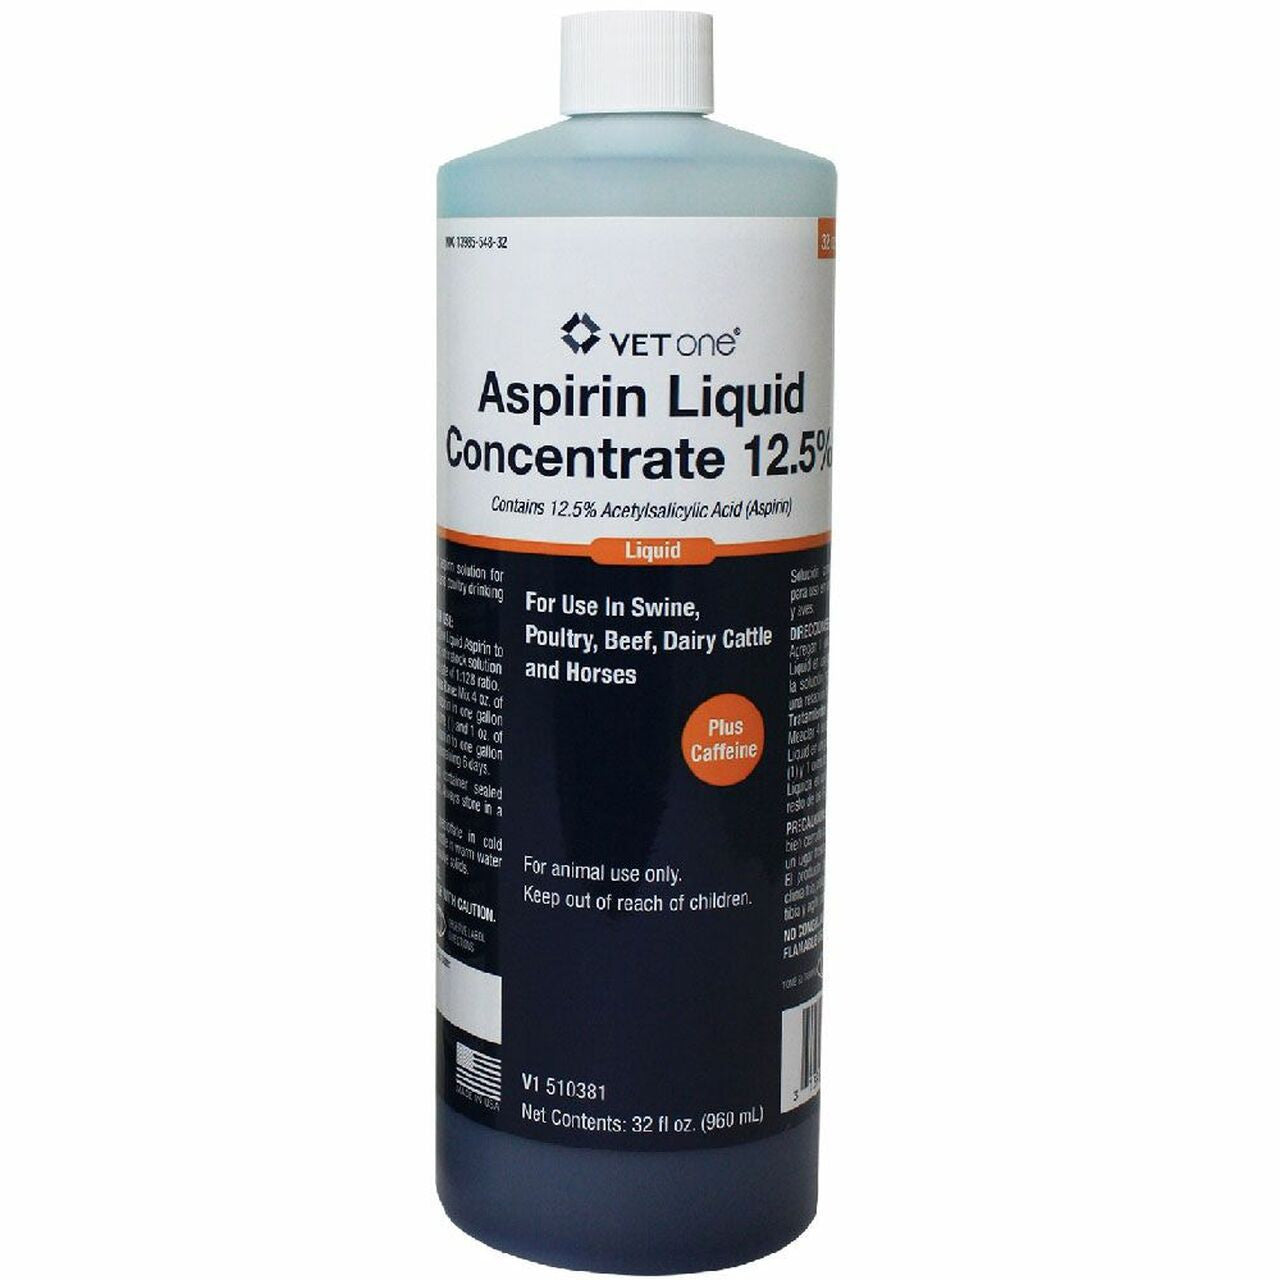 Liquid Aspirin Conc. 12.5% with Caffeine - 32oz.